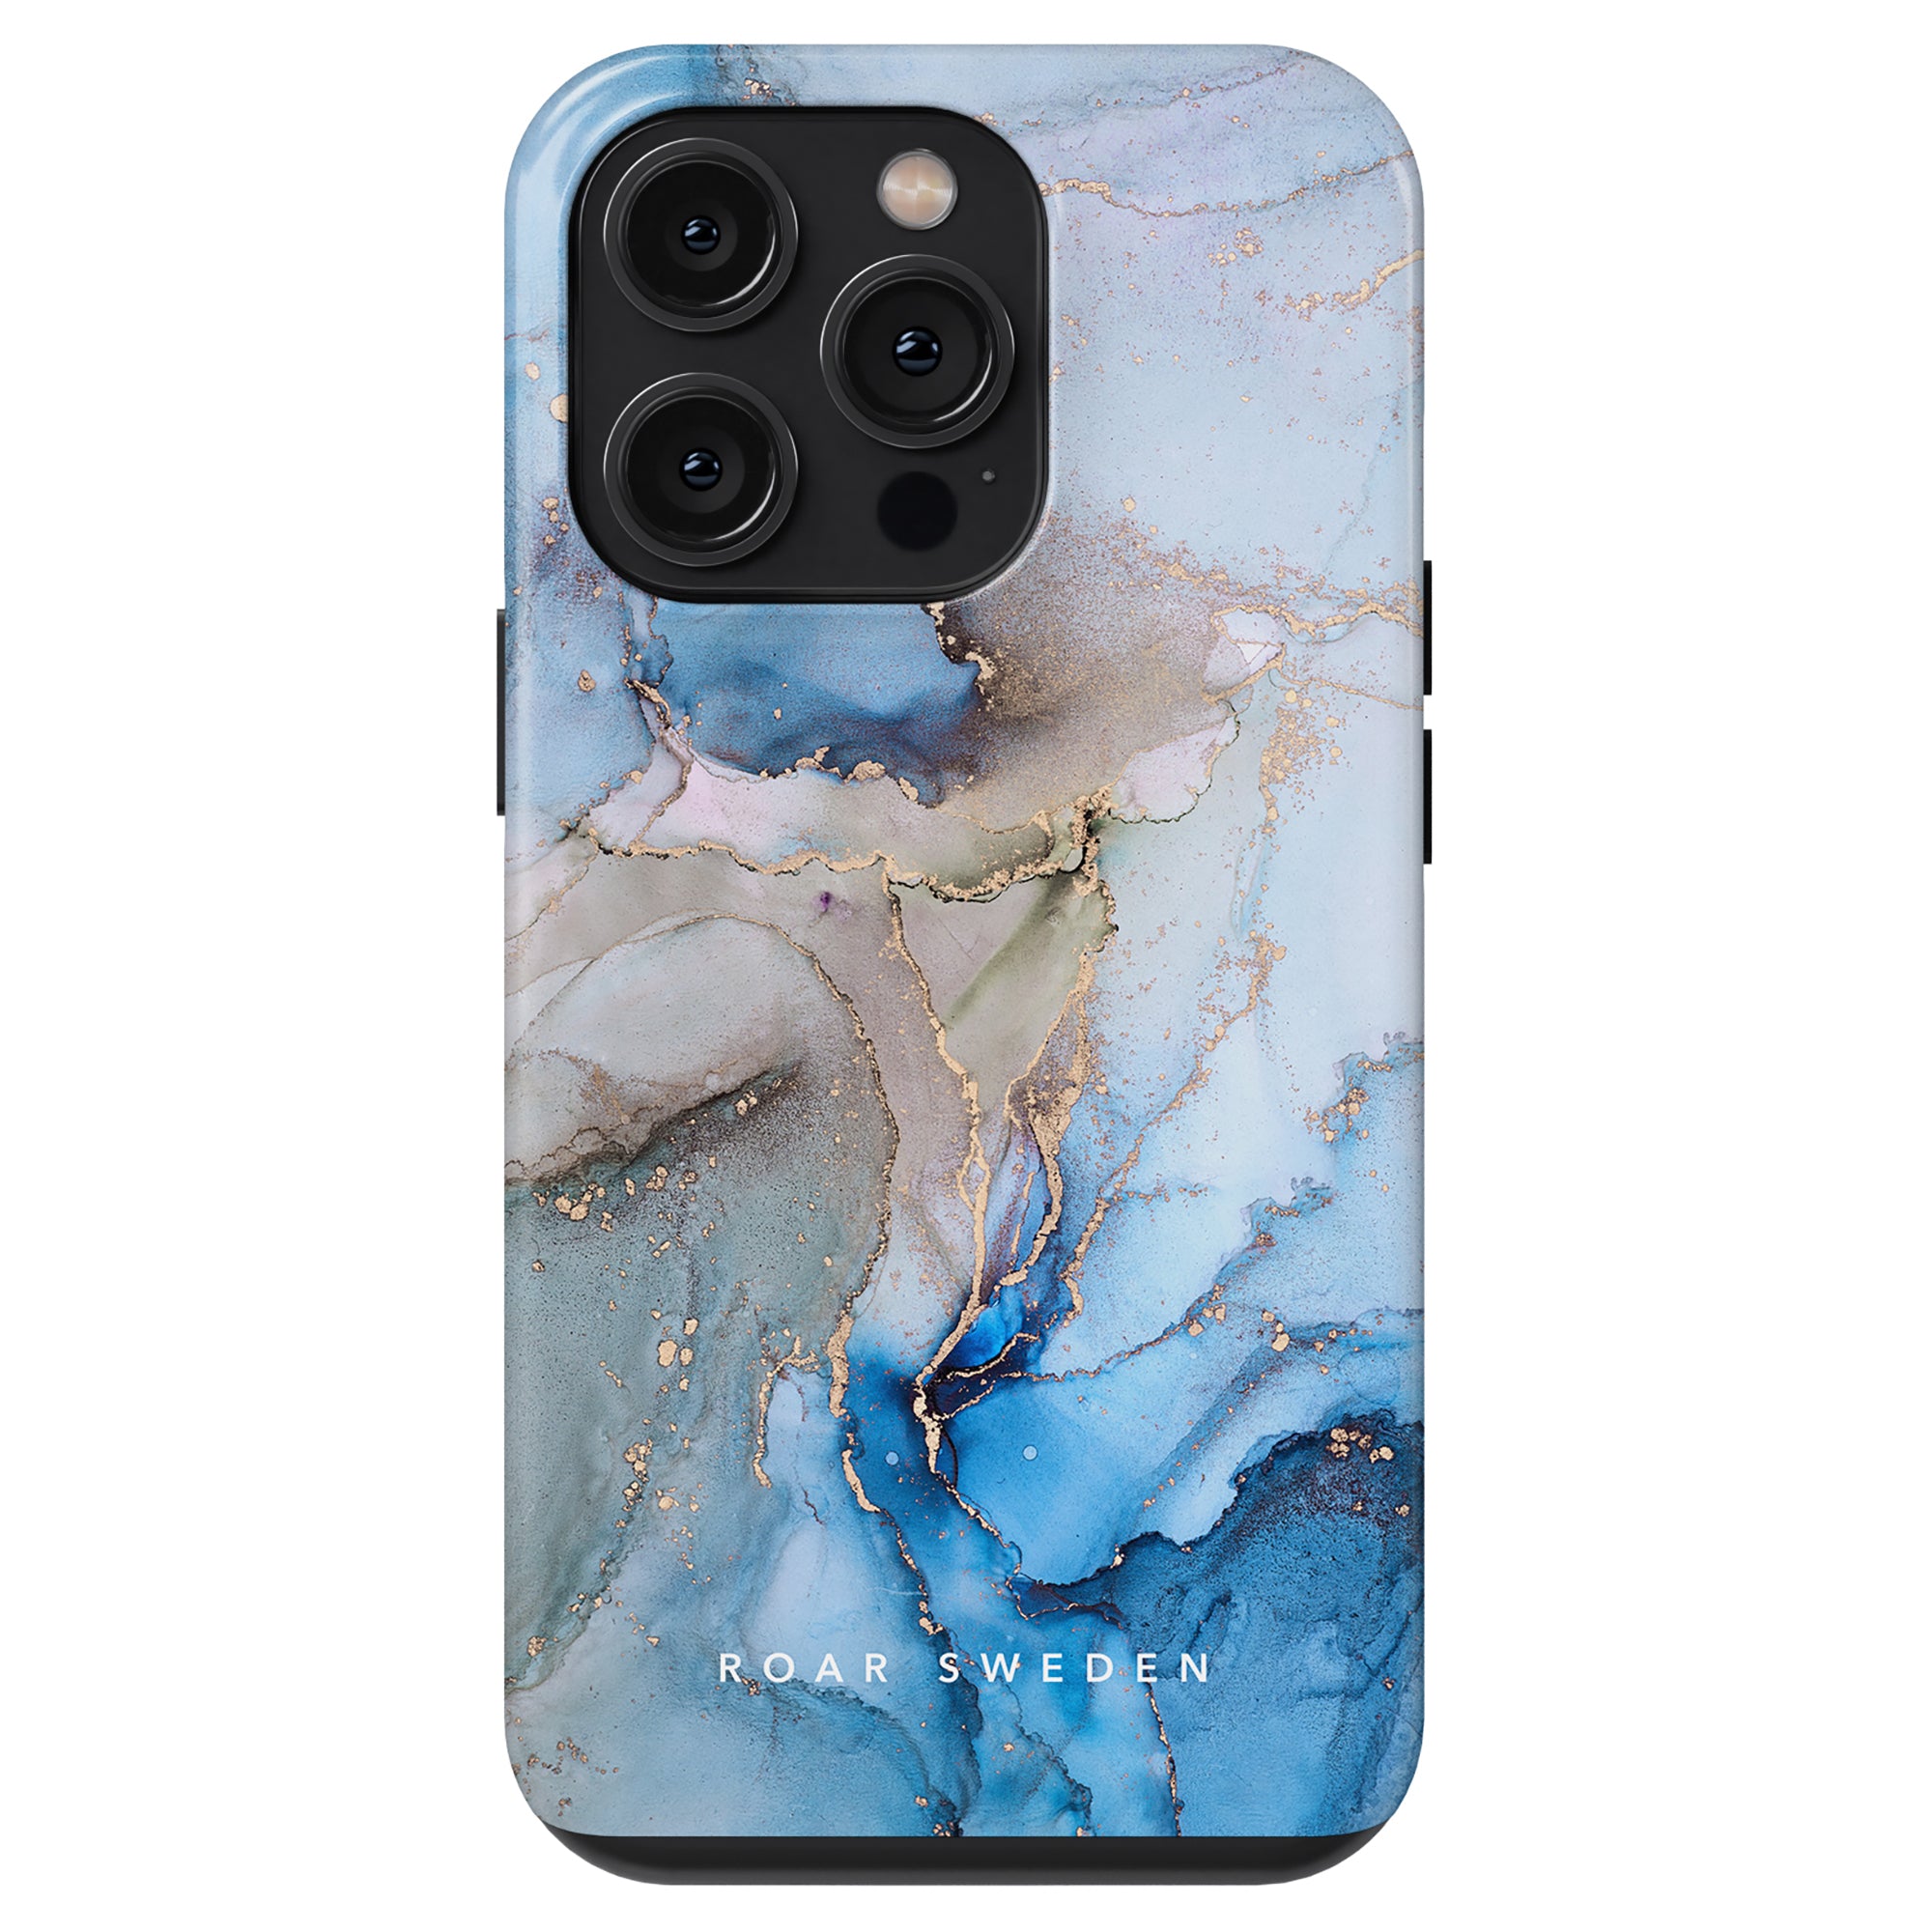 Ett tufft fodral med en blå och guldmarmordesign inspirerad av vågorna i havet, perfekt för iPhone 11 Pro. Denna Waves - Tough Case är gjord av